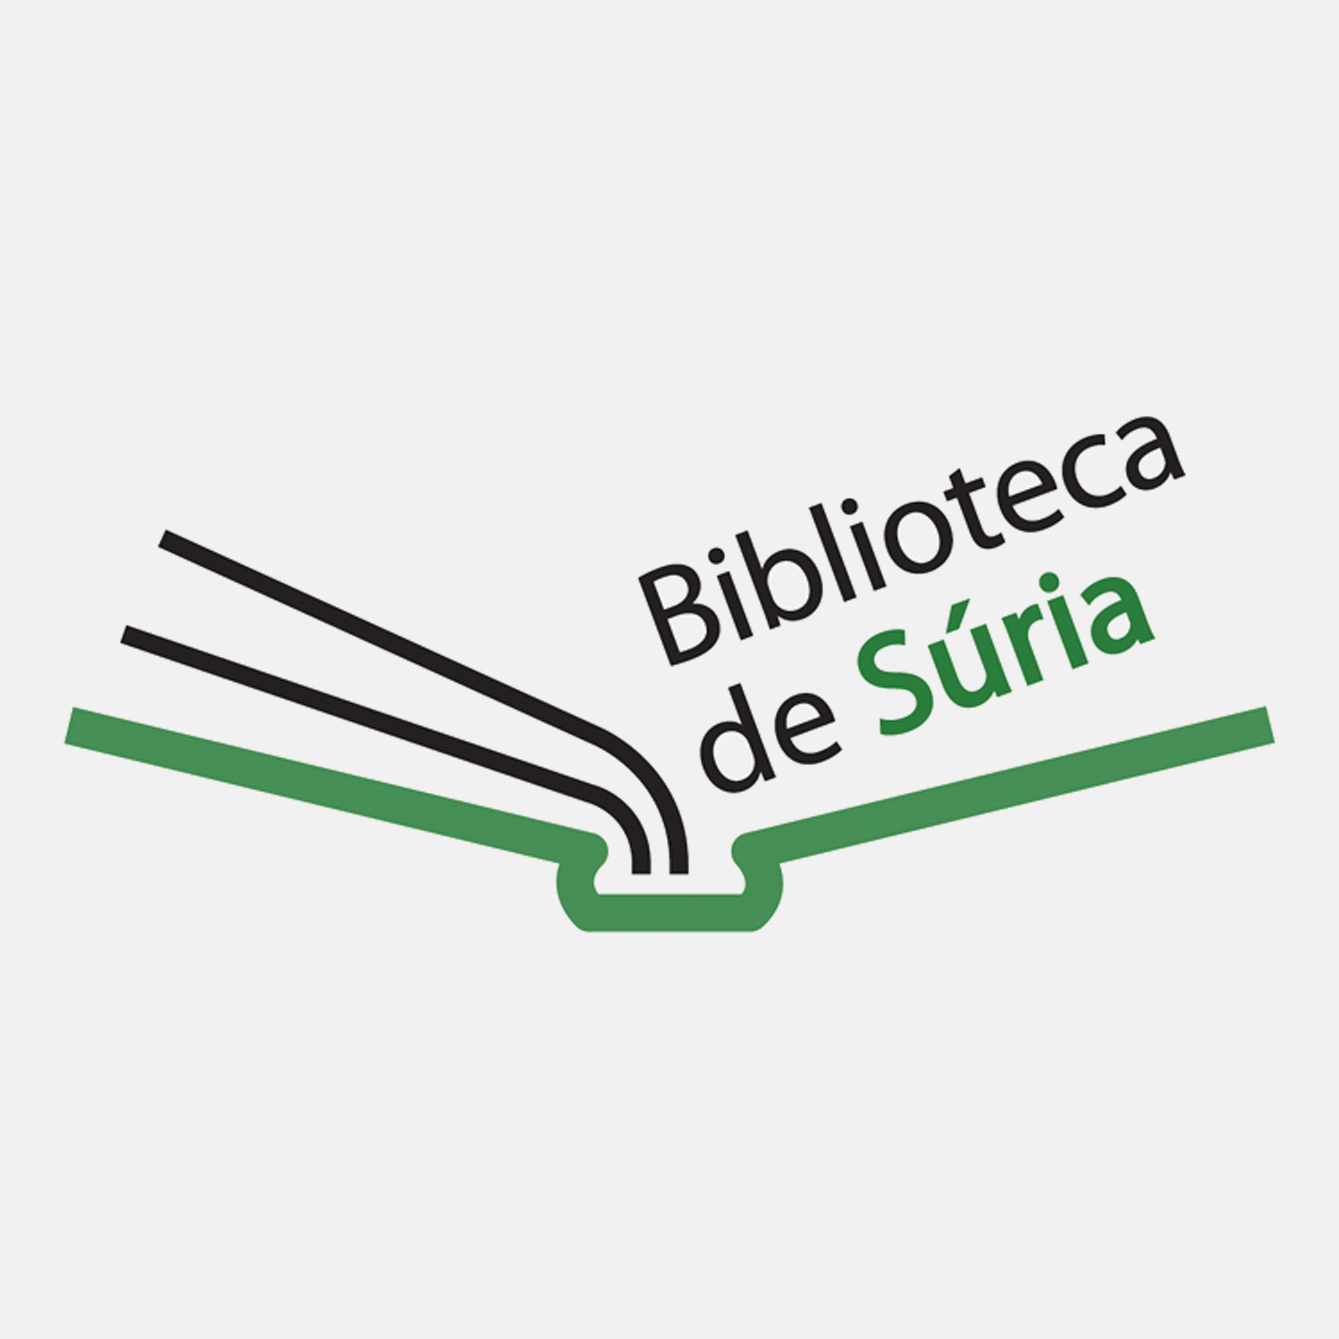 Logotip de la Biblioteca Pública.